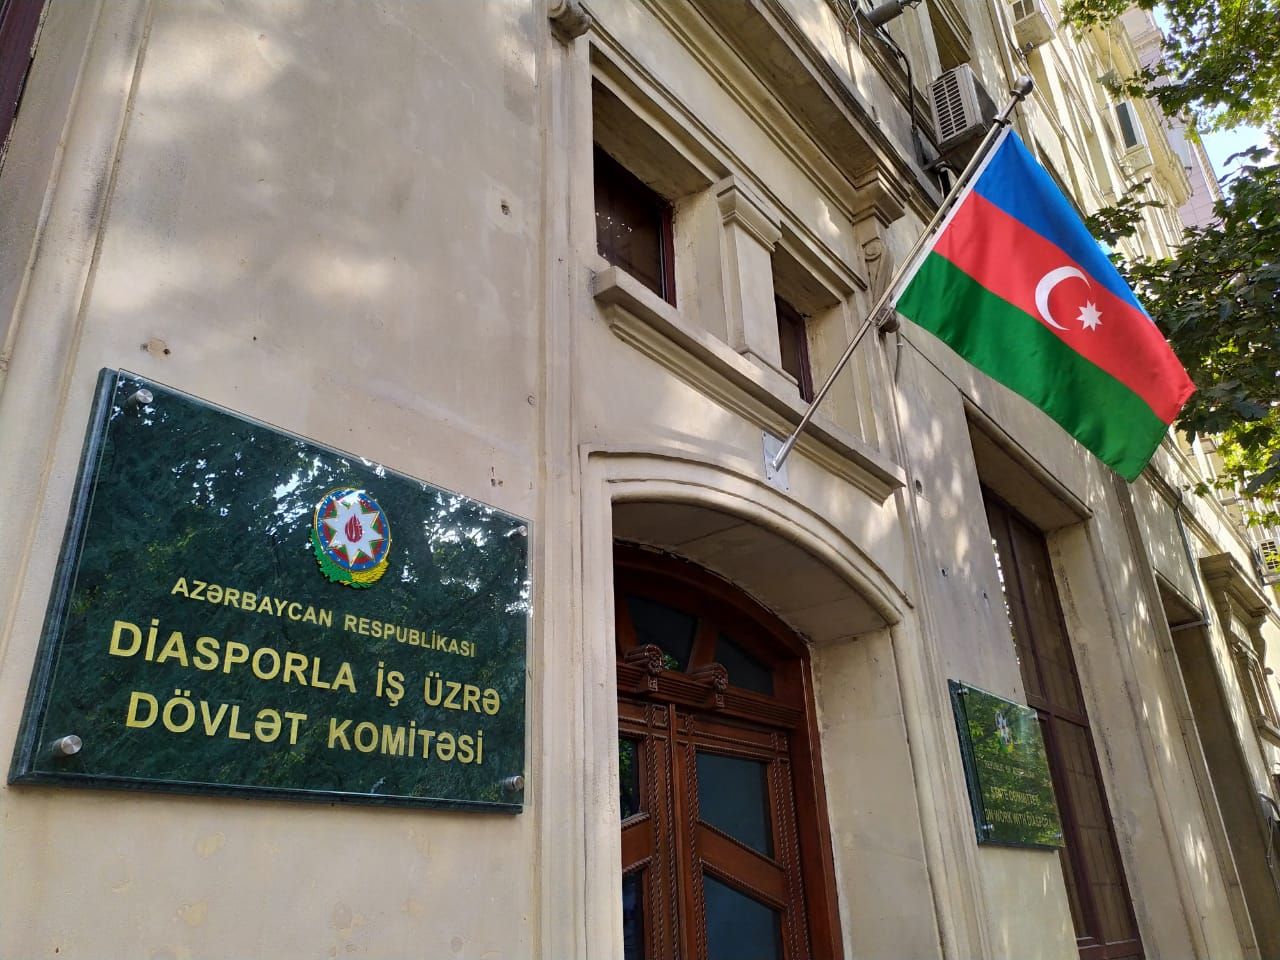 Обращение Государственного комитета по работе с диаспорой к азербайджанской диаспоре